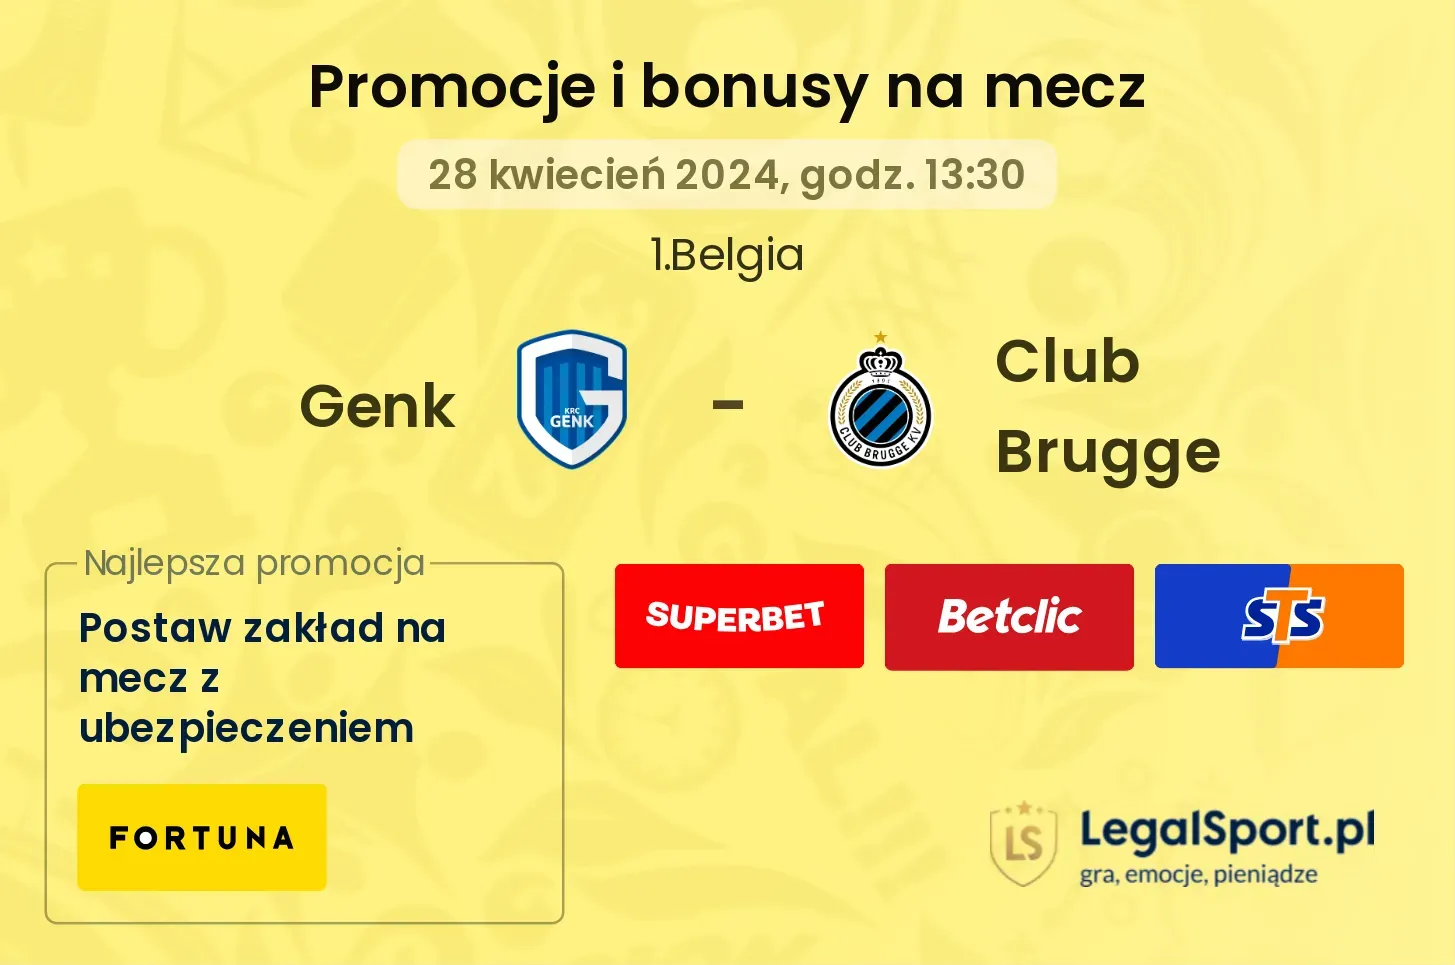 Genk - Club Brugge promocje bonusy na mecz